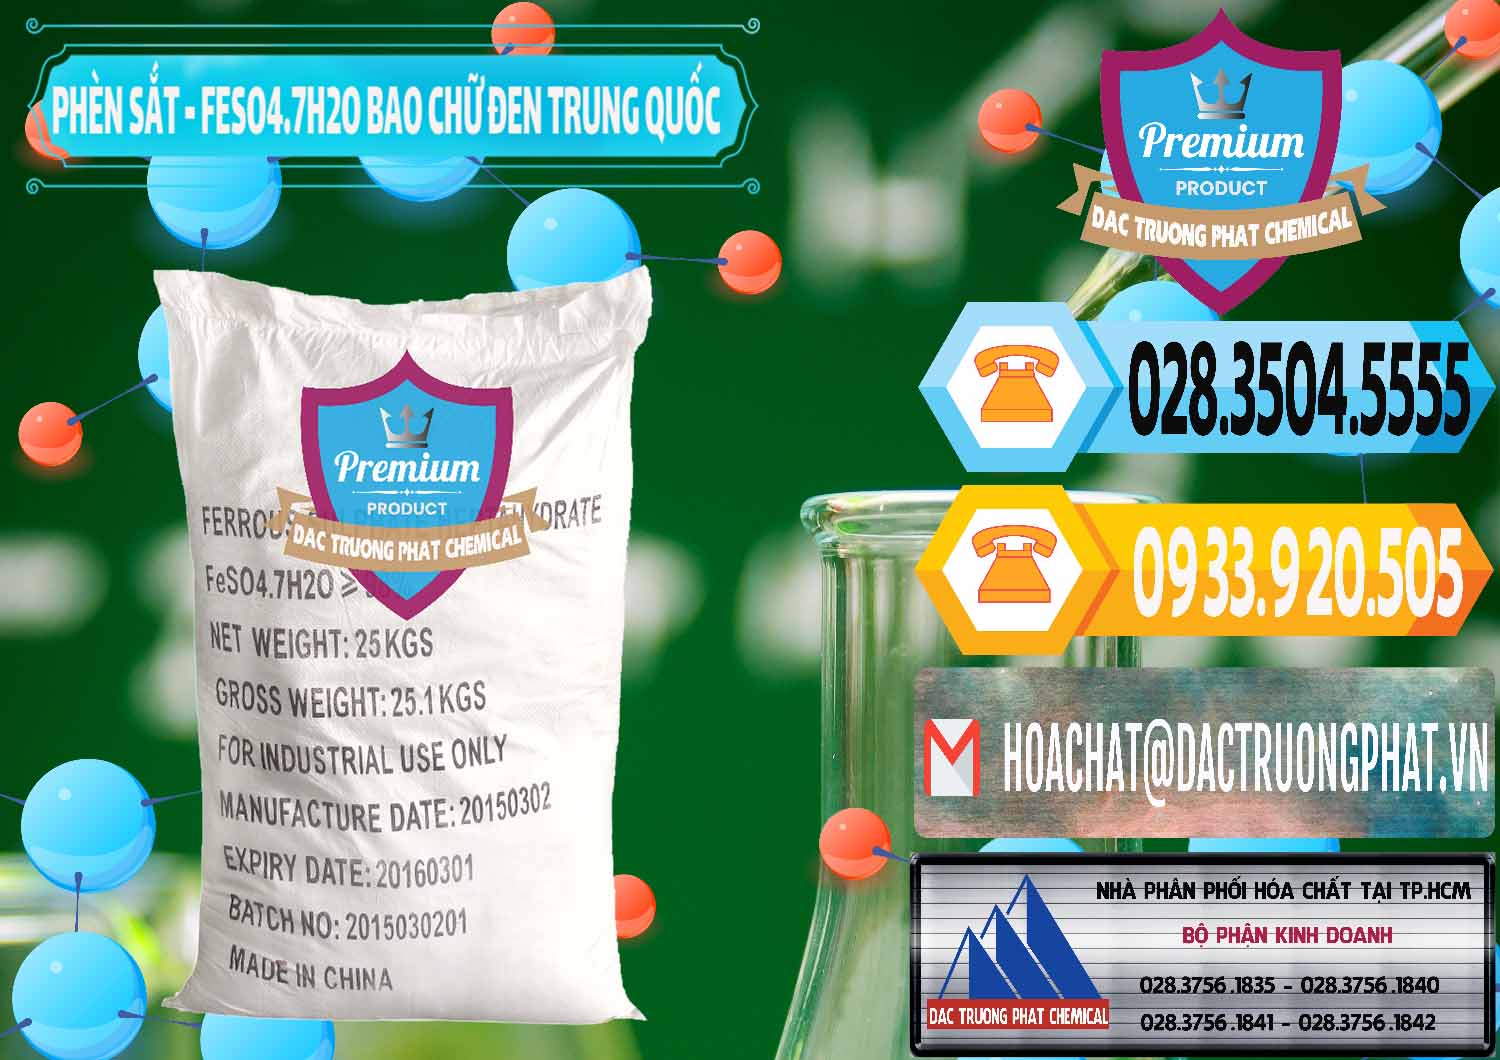 Công ty chuyên cung ứng và bán Phèn Sắt - FeSO4.7H2O Bao Chữ Đen Trung Quốc China - 0234 - Nhà cung cấp _ nhập khẩu hóa chất tại TP.HCM - hoachattayrua.net